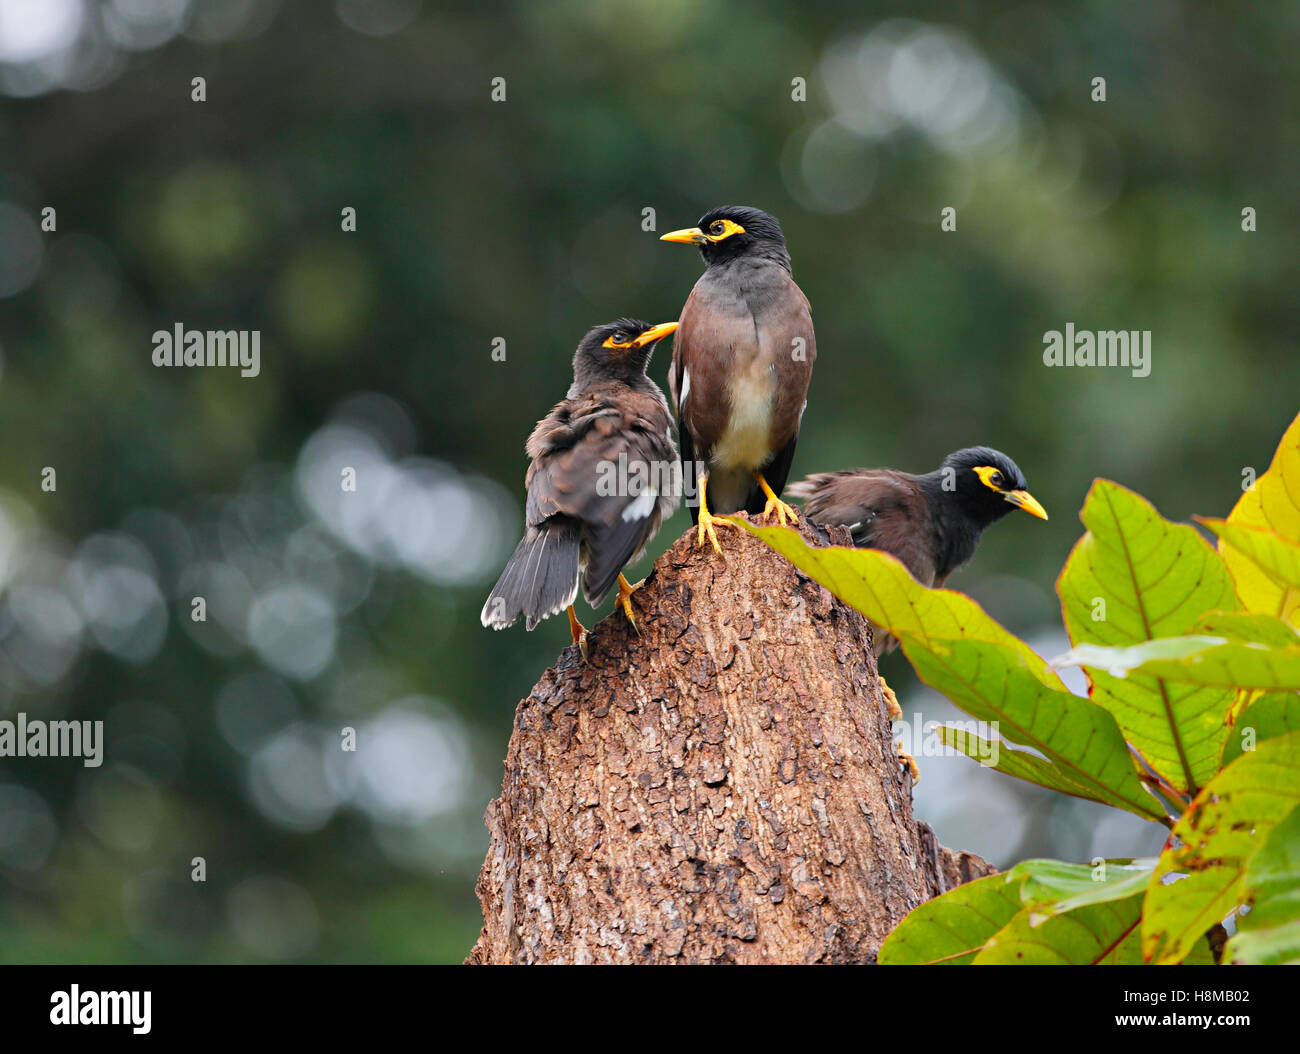 Drei wilde Vögel auf dem drei Stamm - indische Myna, Seychellen Insel La Digue Stockfoto